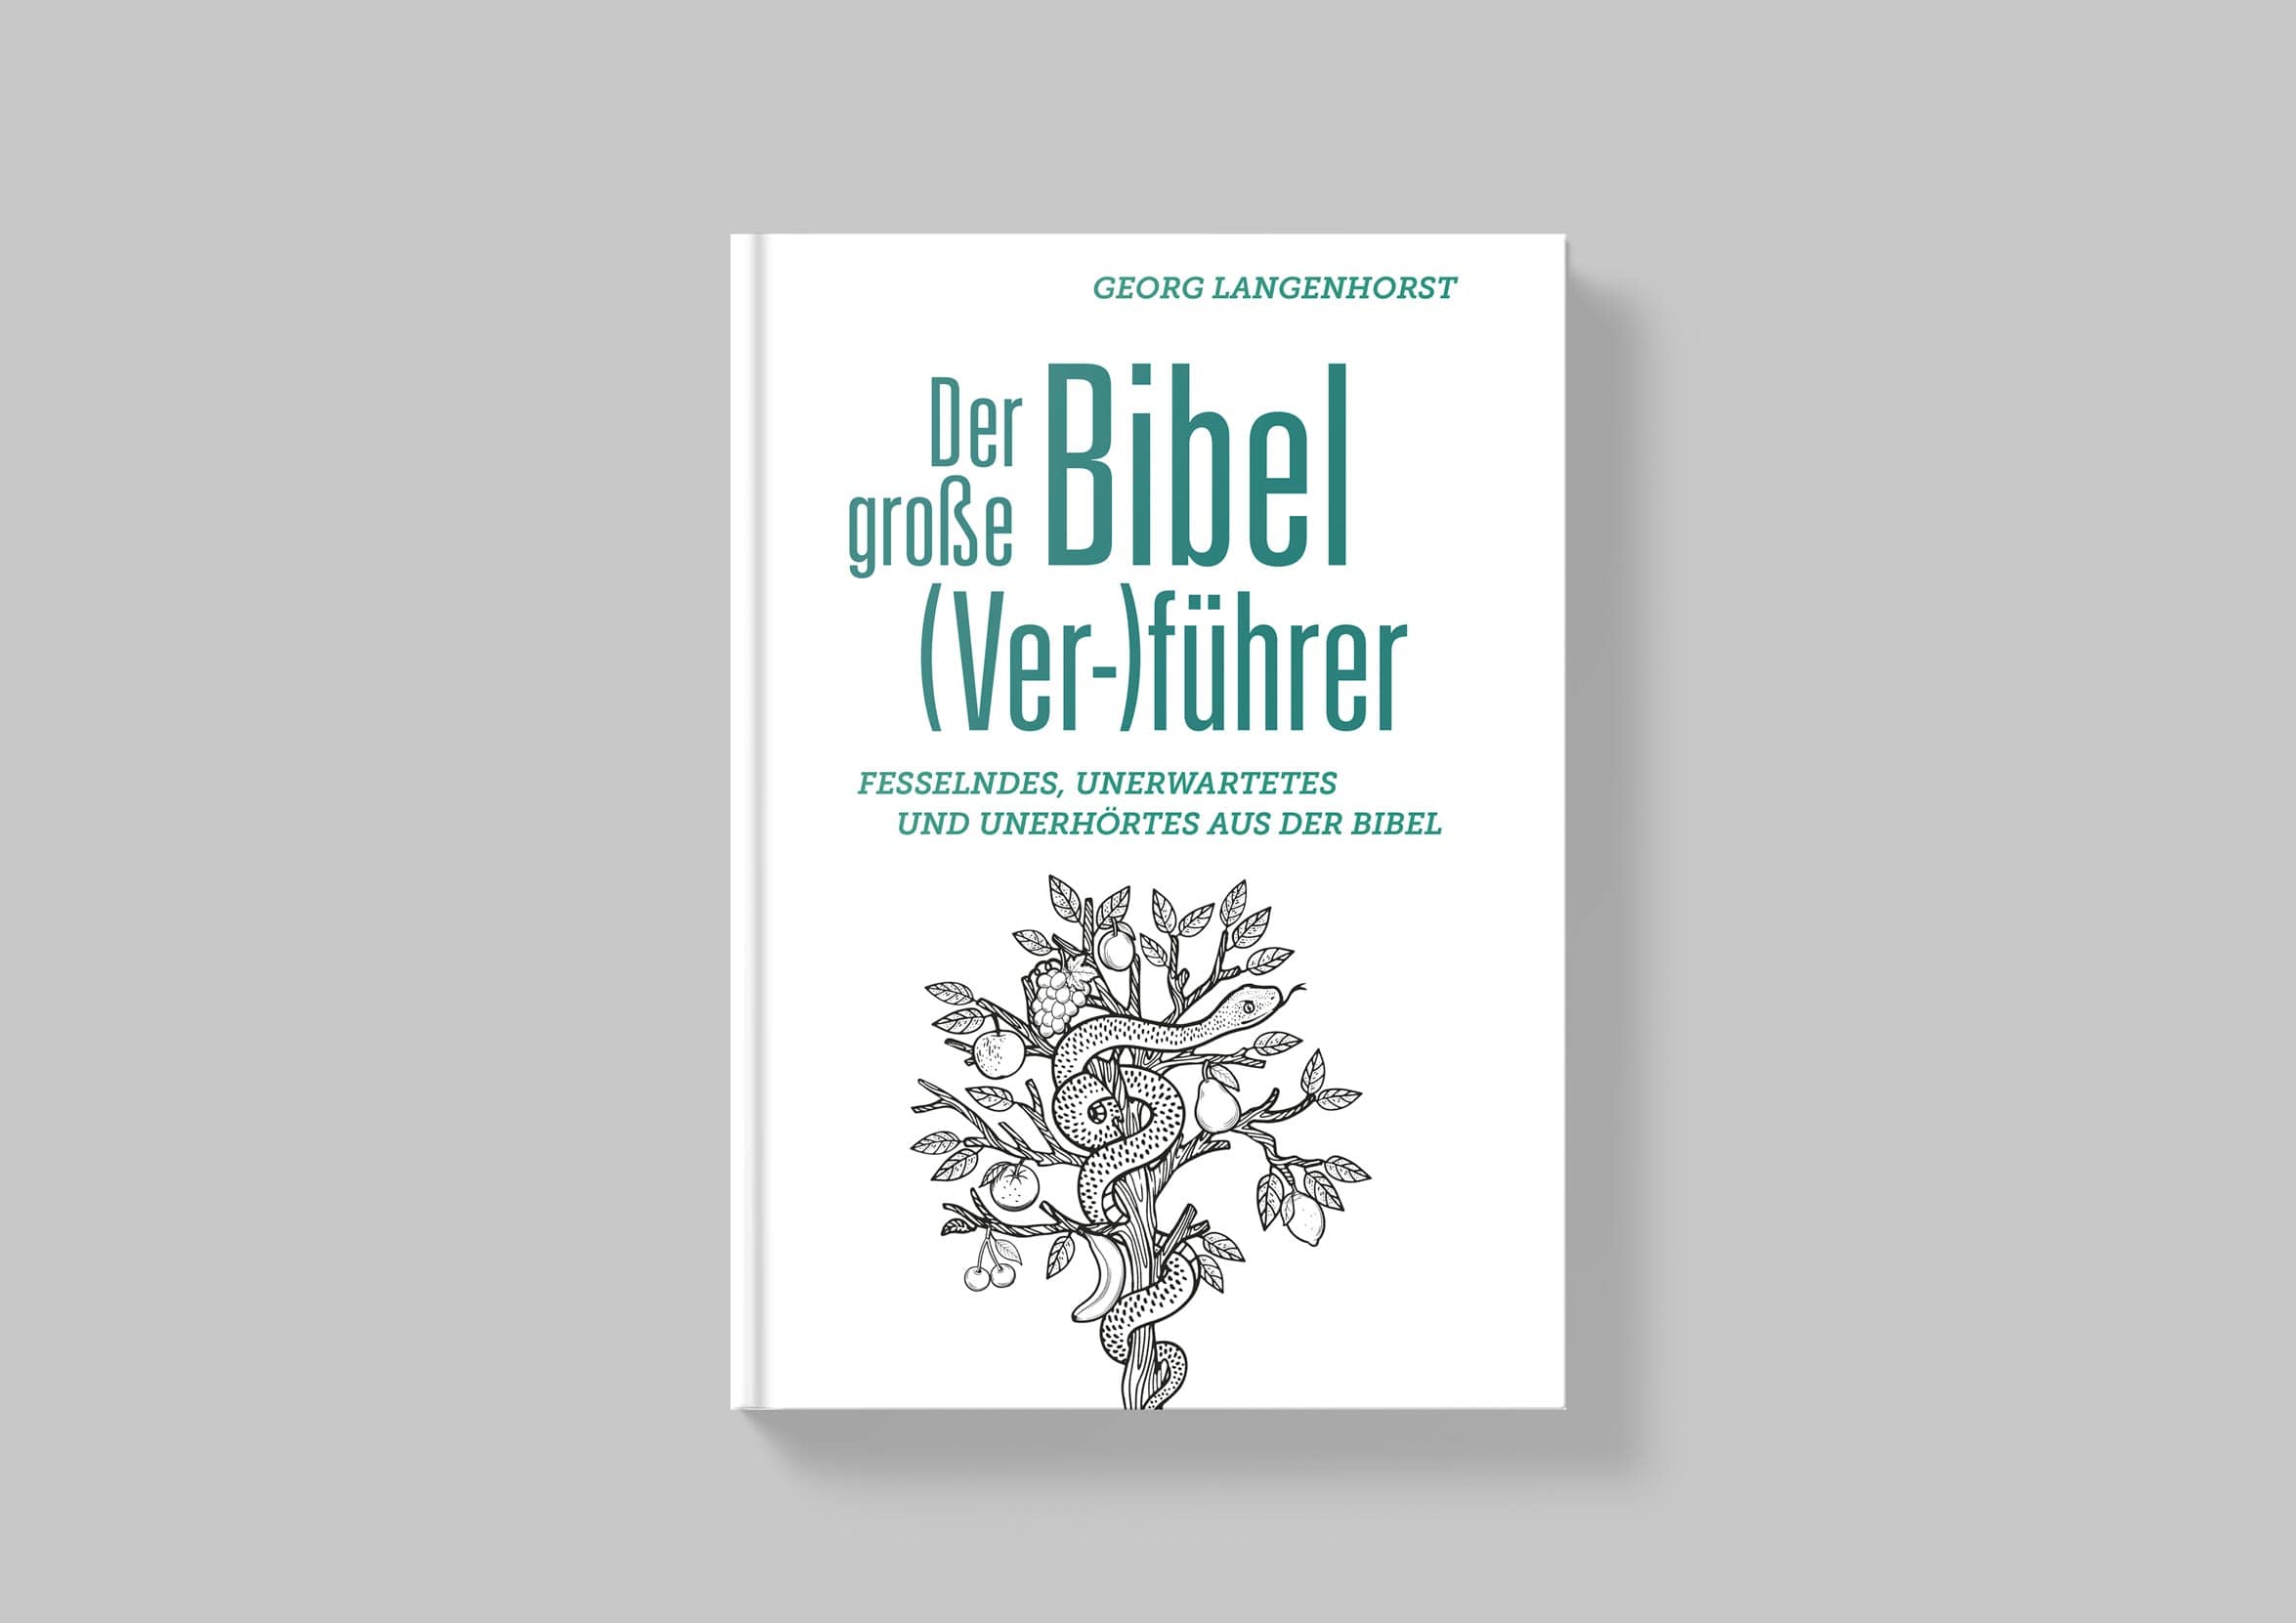 057_Der-grosse-bibel-verfuehrer_U1